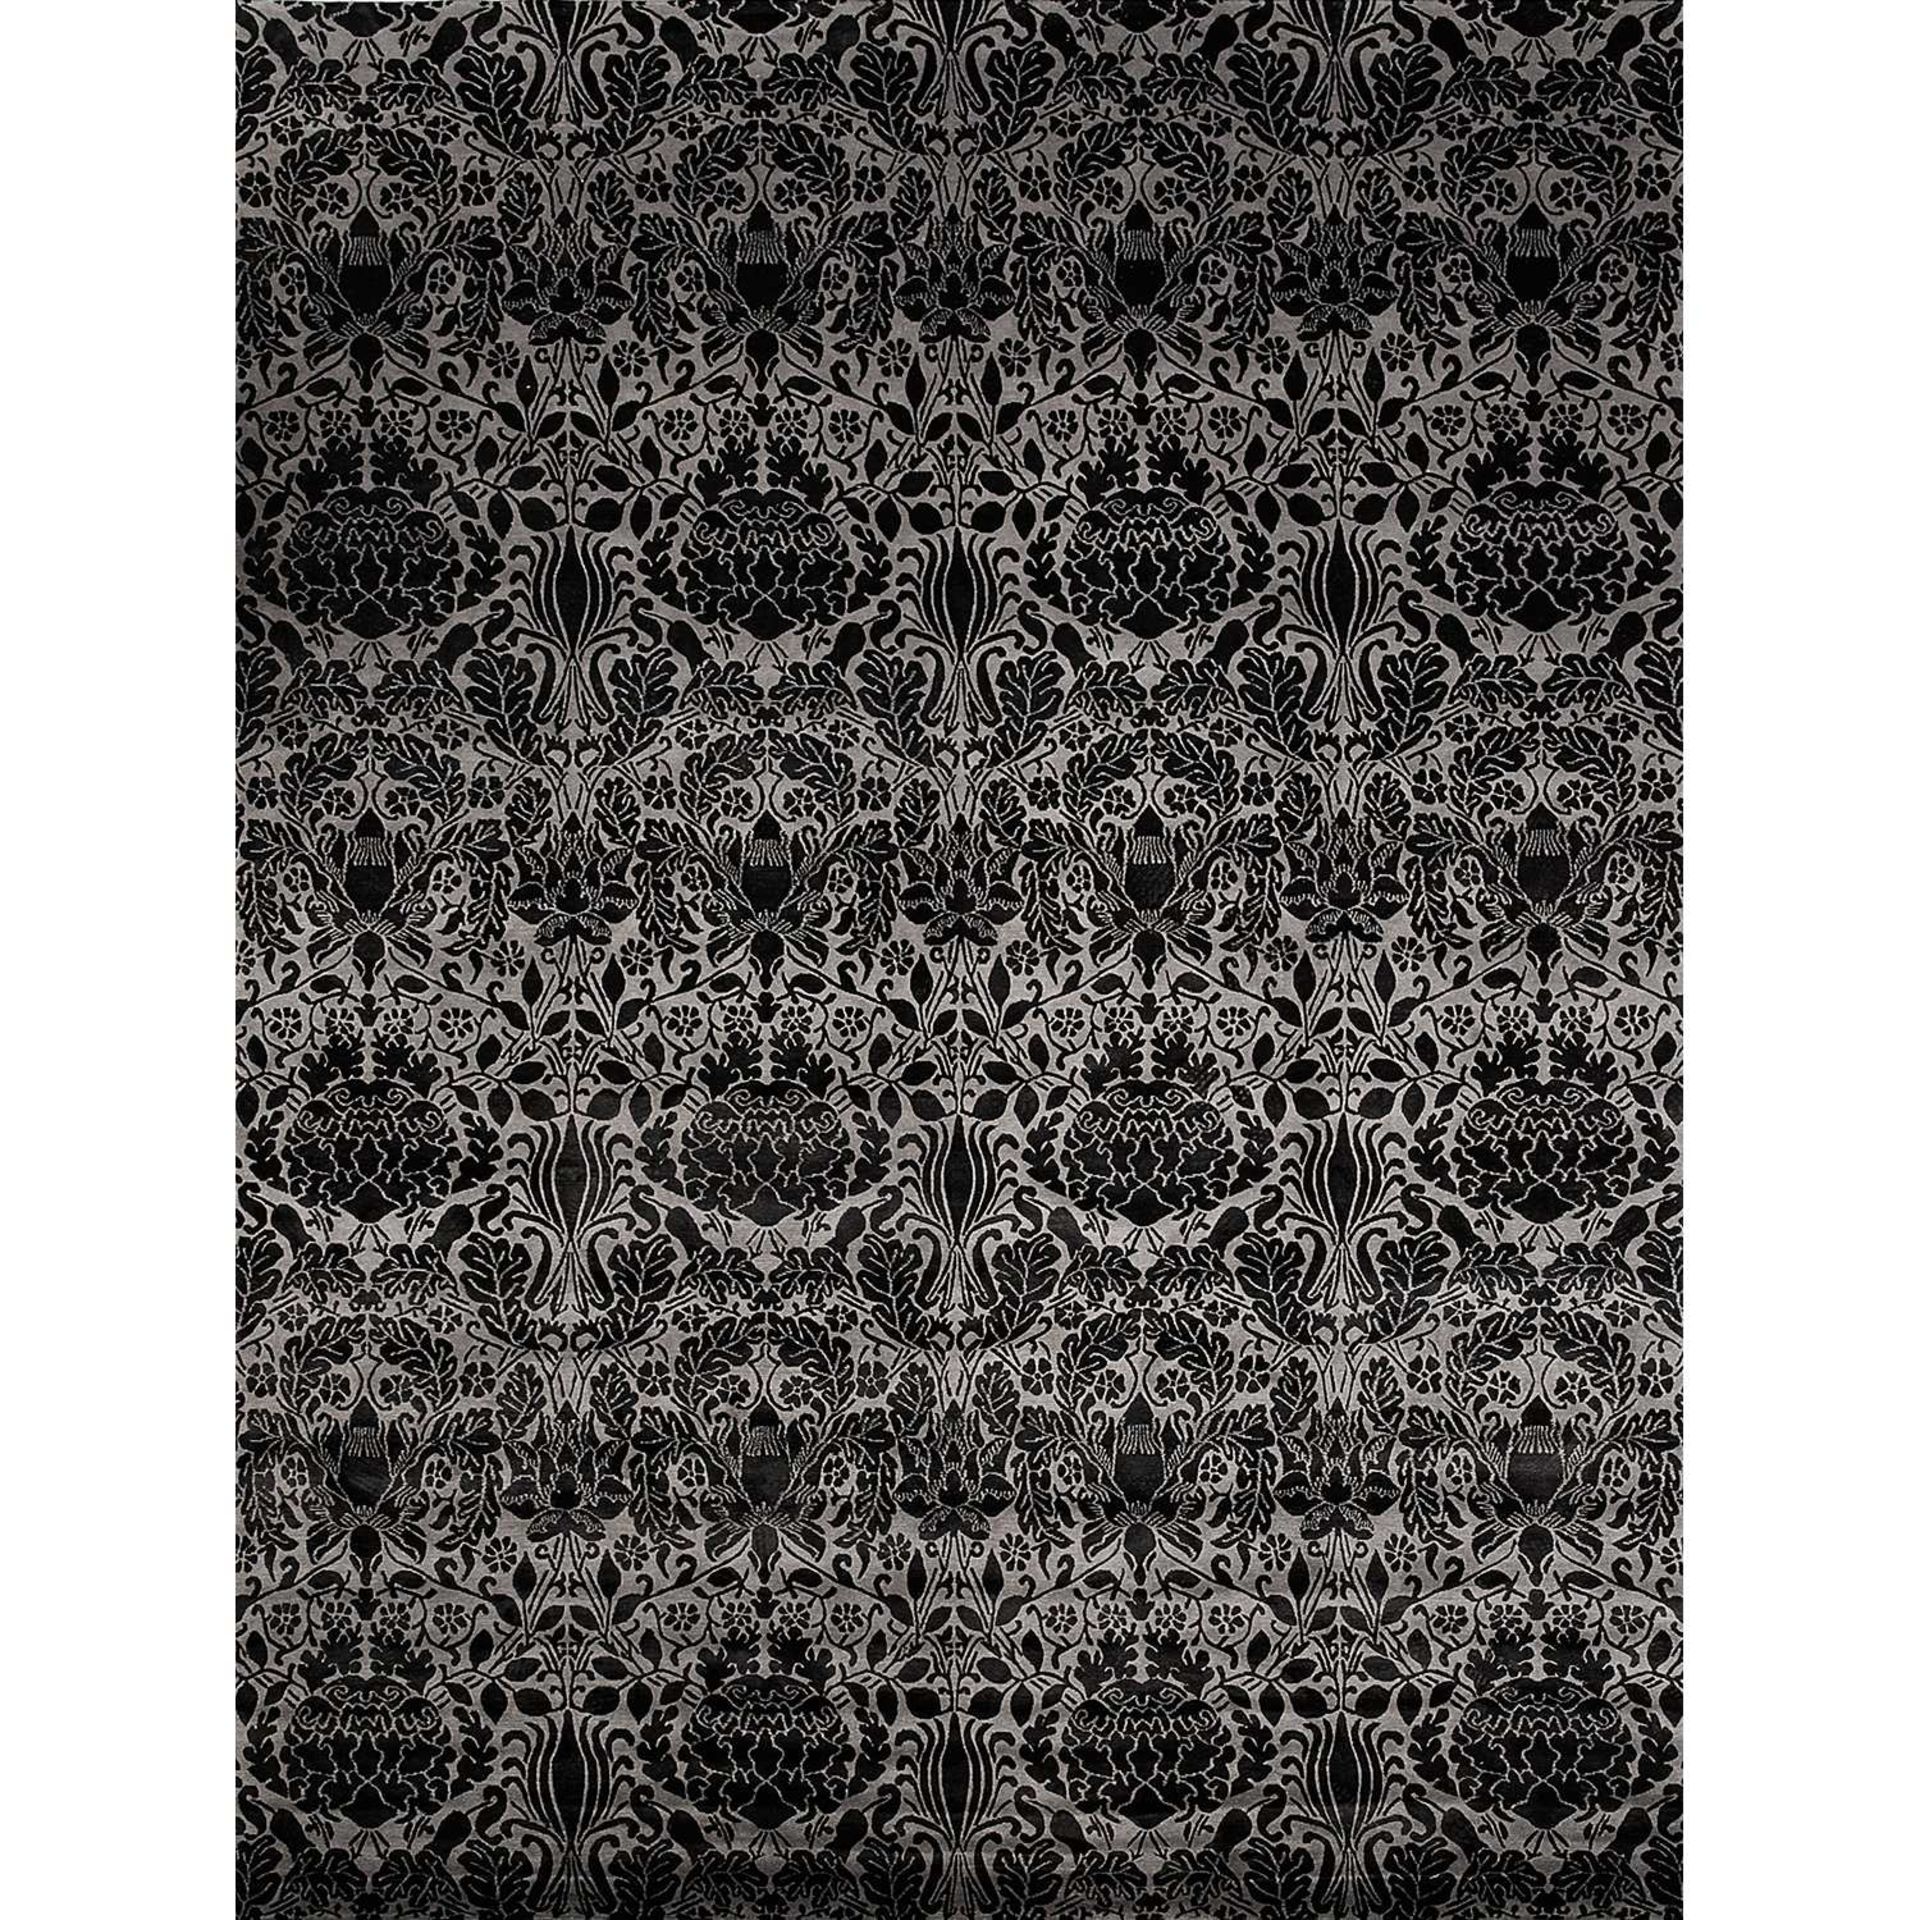 CHEVALIER ÉDITION Tapis tissé main, point noué haute laine, à décor floral noir sur fond gris. A